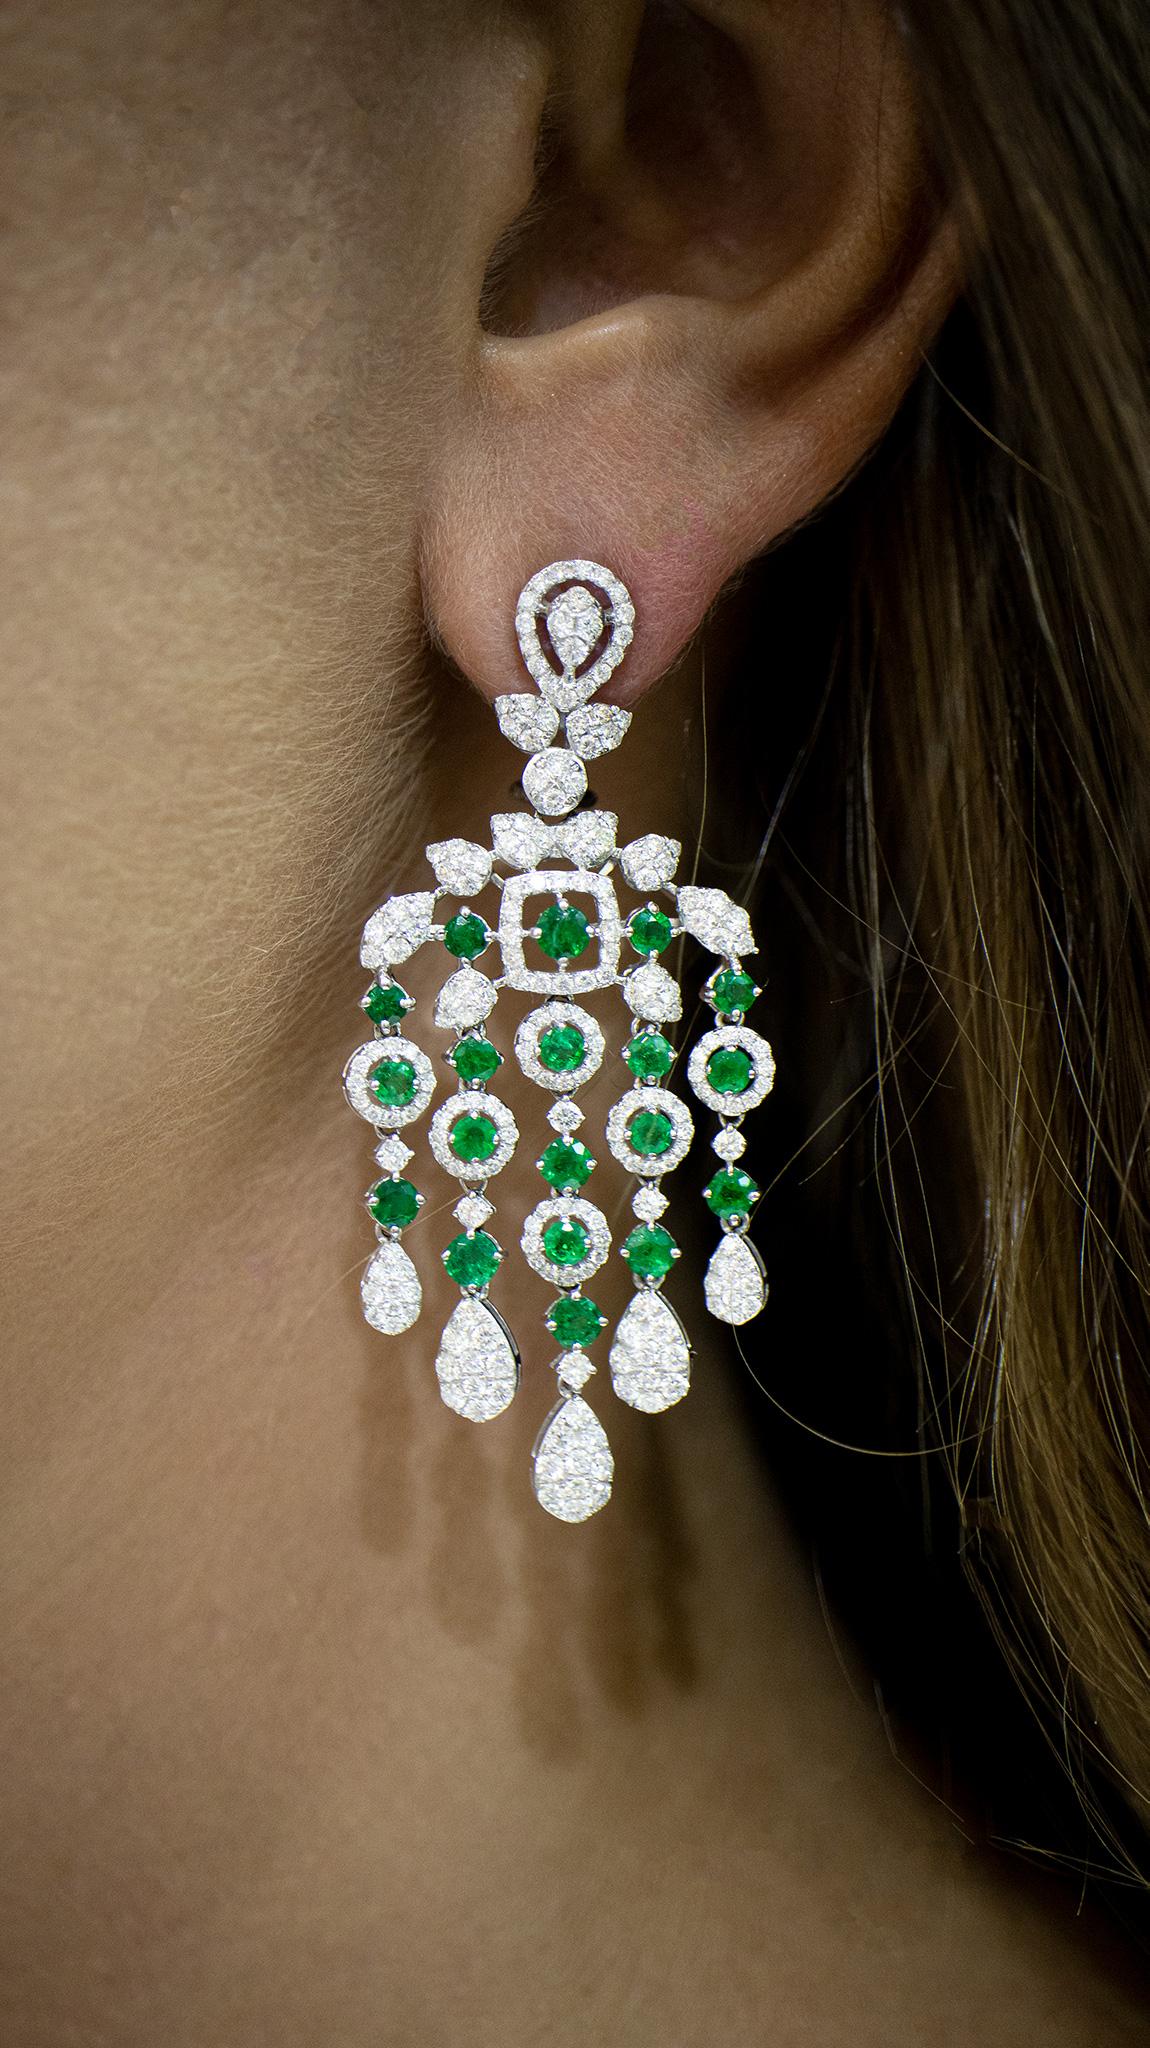 Schöner Kronleuchter Ohrringe mit Smaragden und Diamanten gesetzt. Er wird mit einem Gutachten von GIA G.G. geliefert.
Gesamtkaratgewicht der Smaragde: 3.46 Karat
Das Gesamtkaratgewicht der Diamanten beträgt 3,87 Karat
Farbe des Diamanten ist